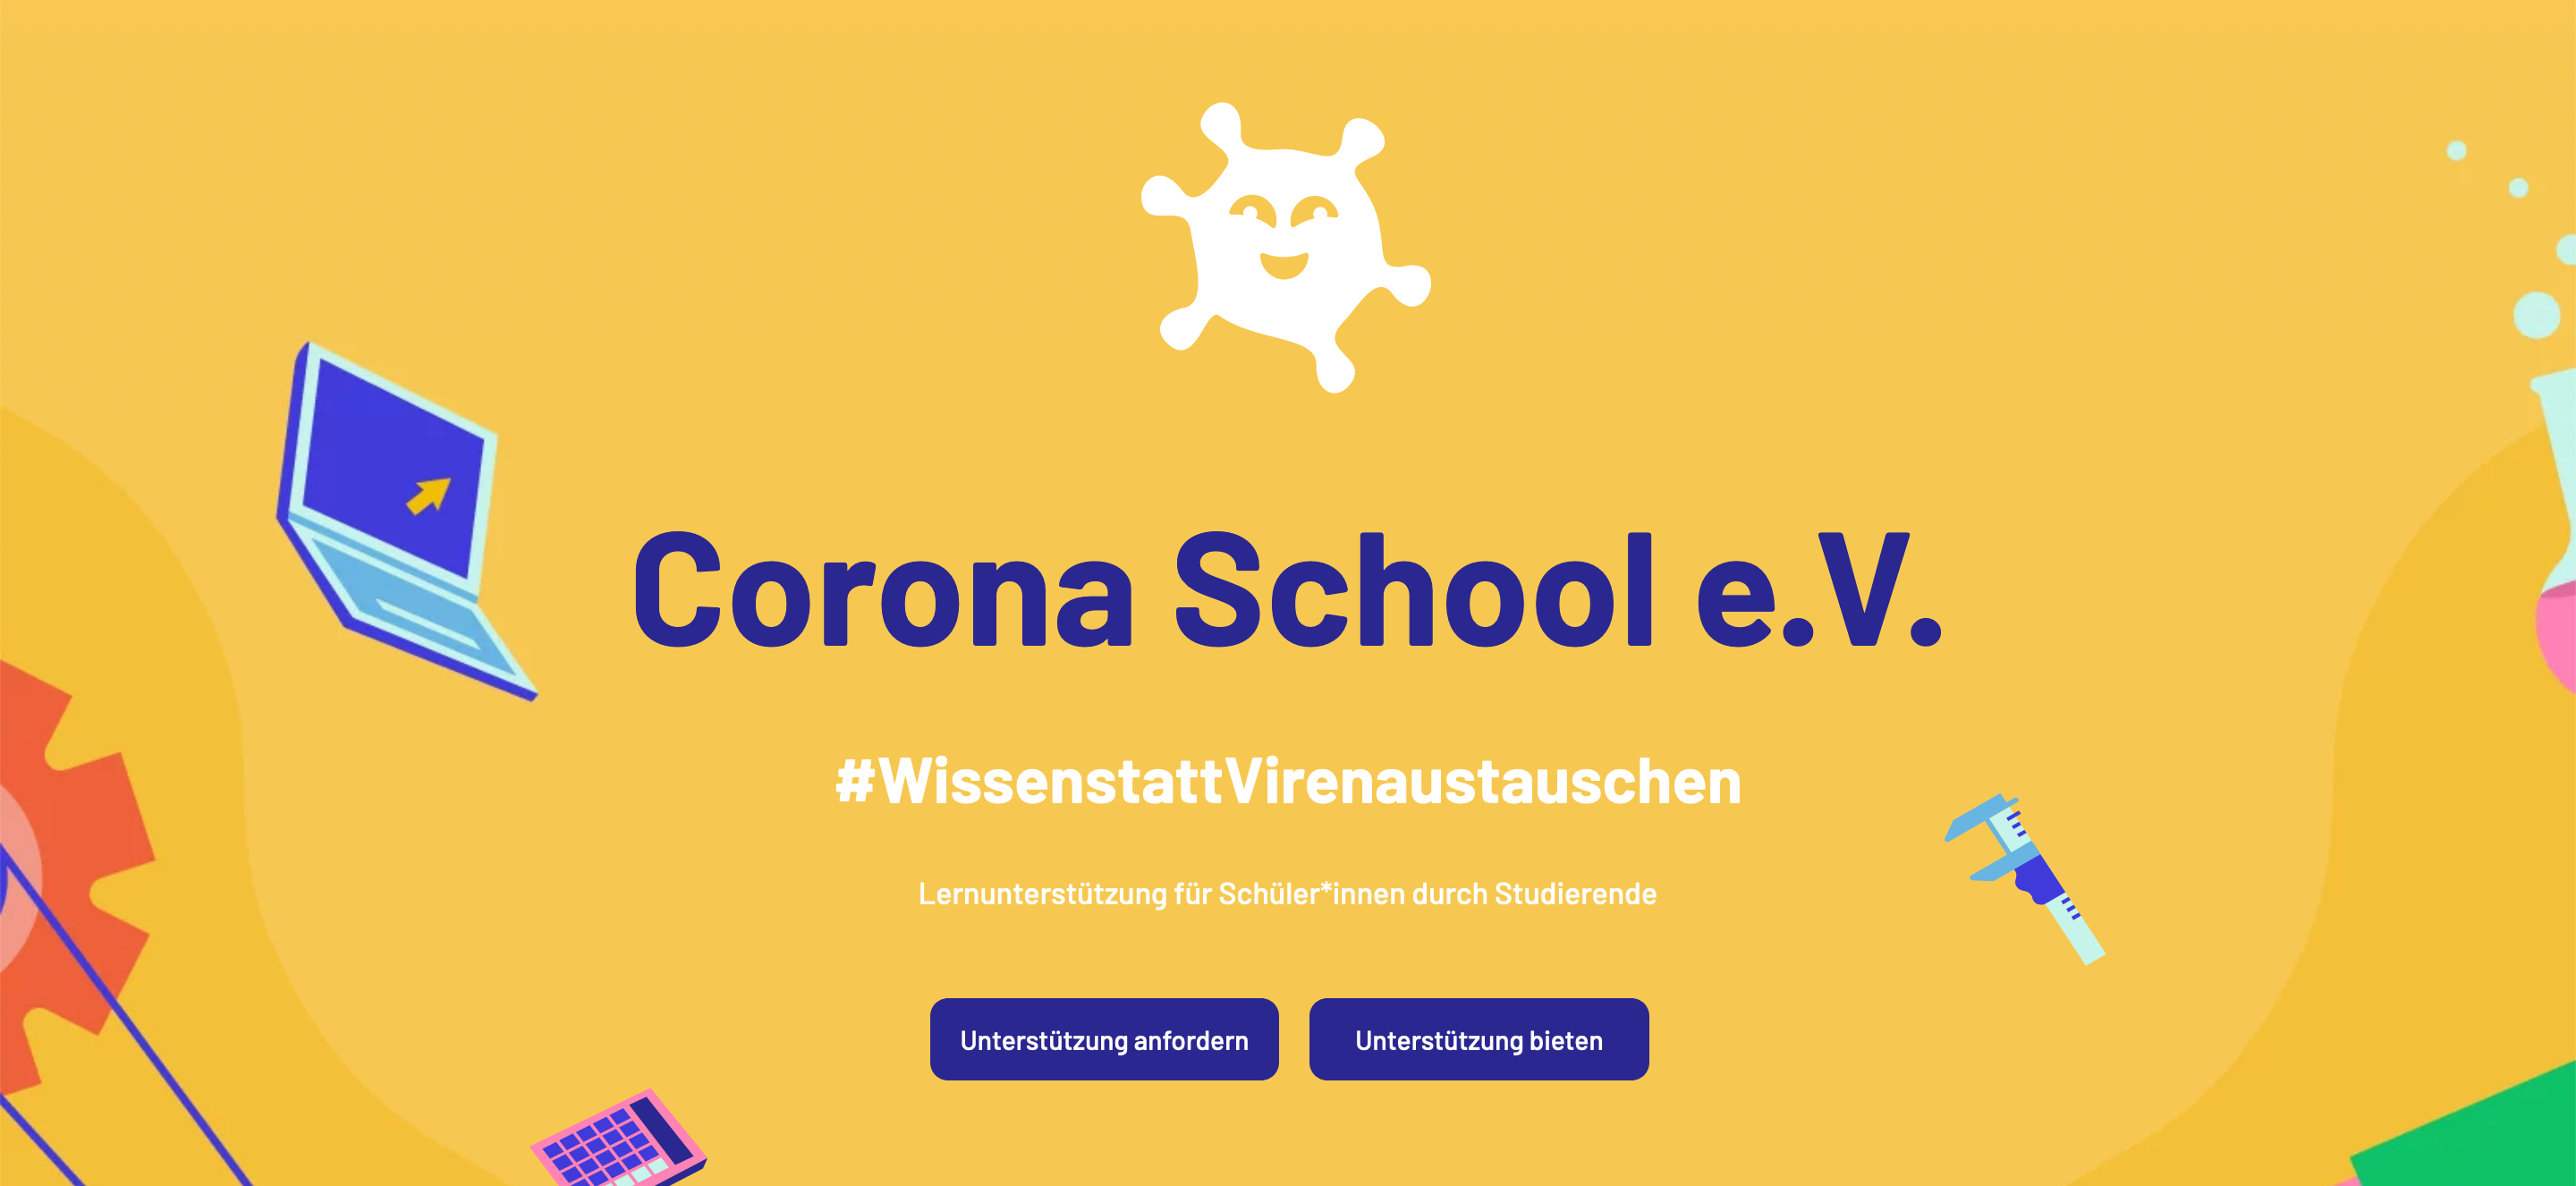 Screenshot der Corona School Homepage. "Corona School e.V. #WissenstattVirenaustauschen Lernunterstützung für Schüler*innen durch Studierende."